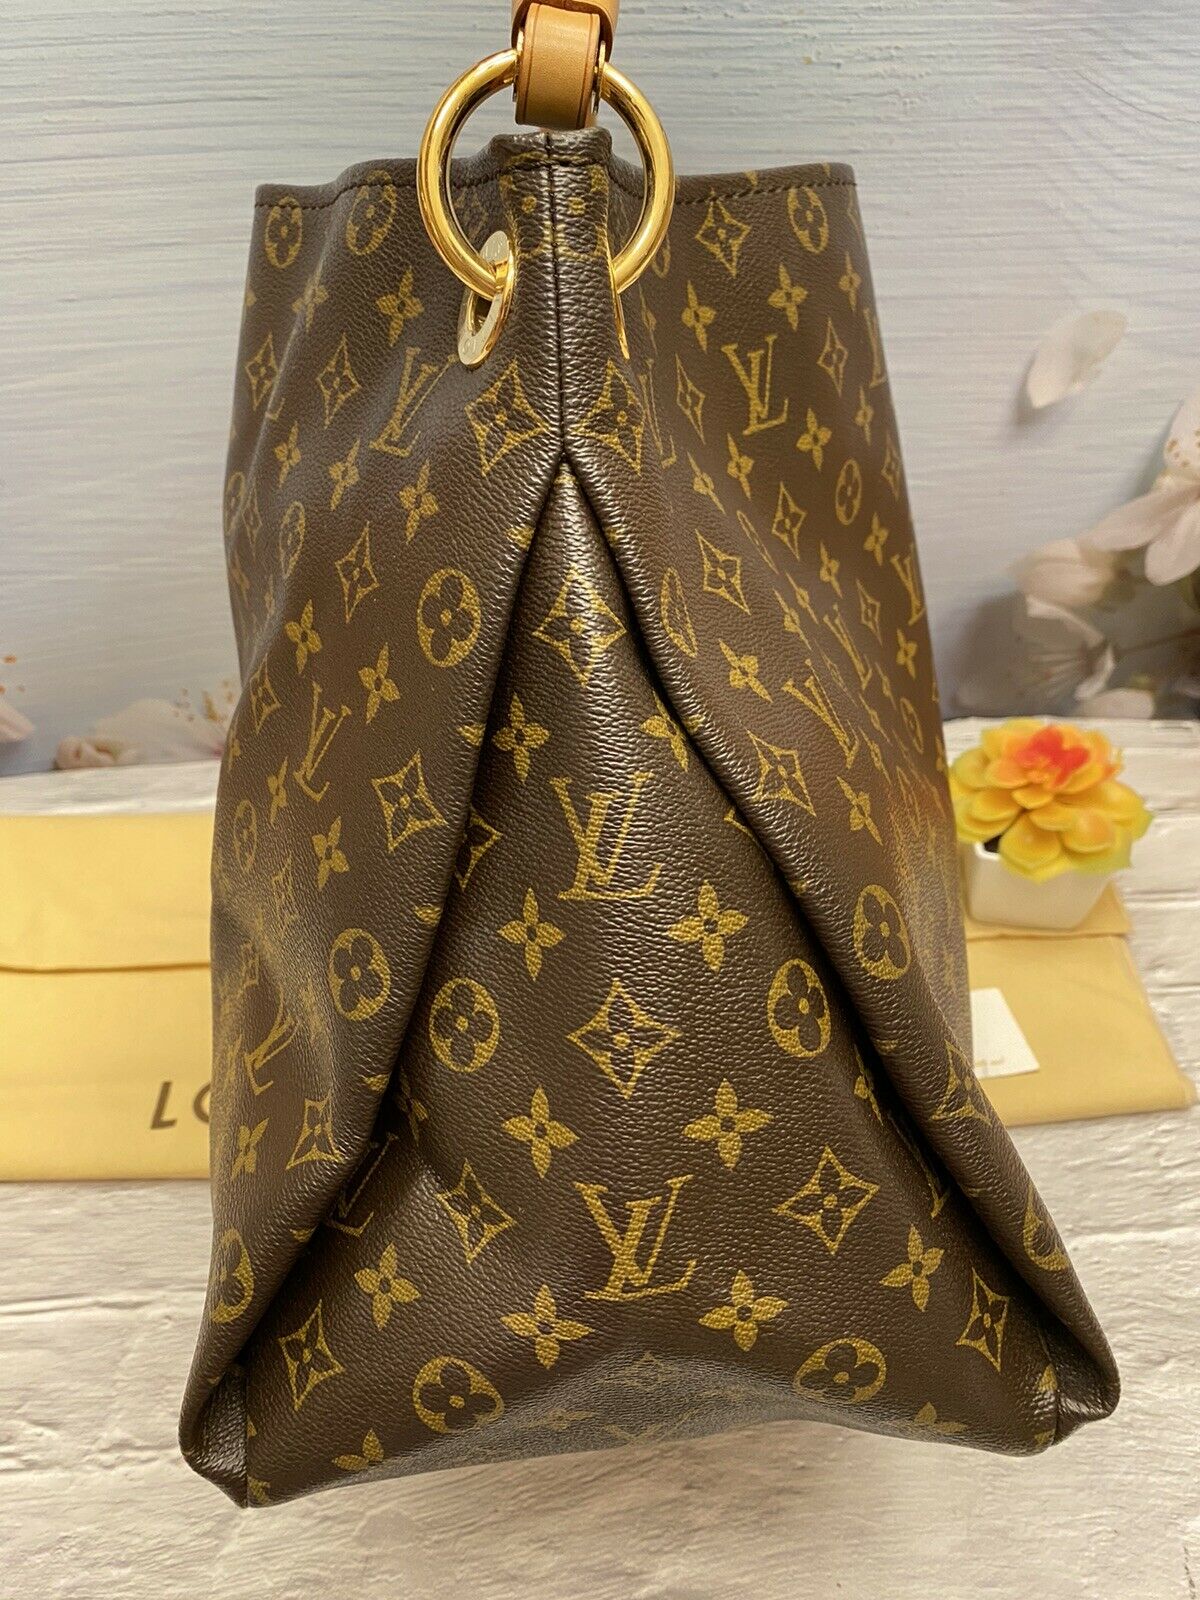 Louis Vuitton Artsy Handbag 397685